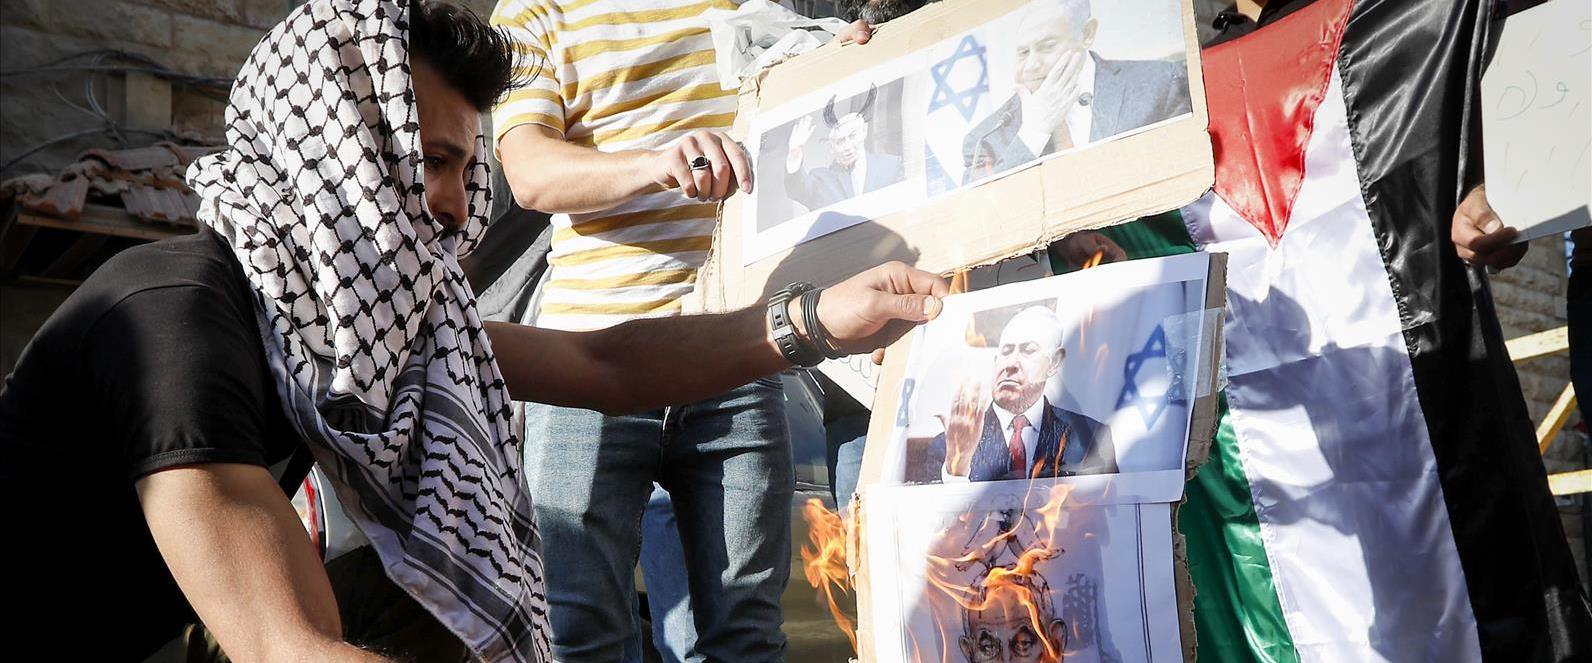 שריפת תמונות של נתניהו במחאה נגד דבריו בחברון